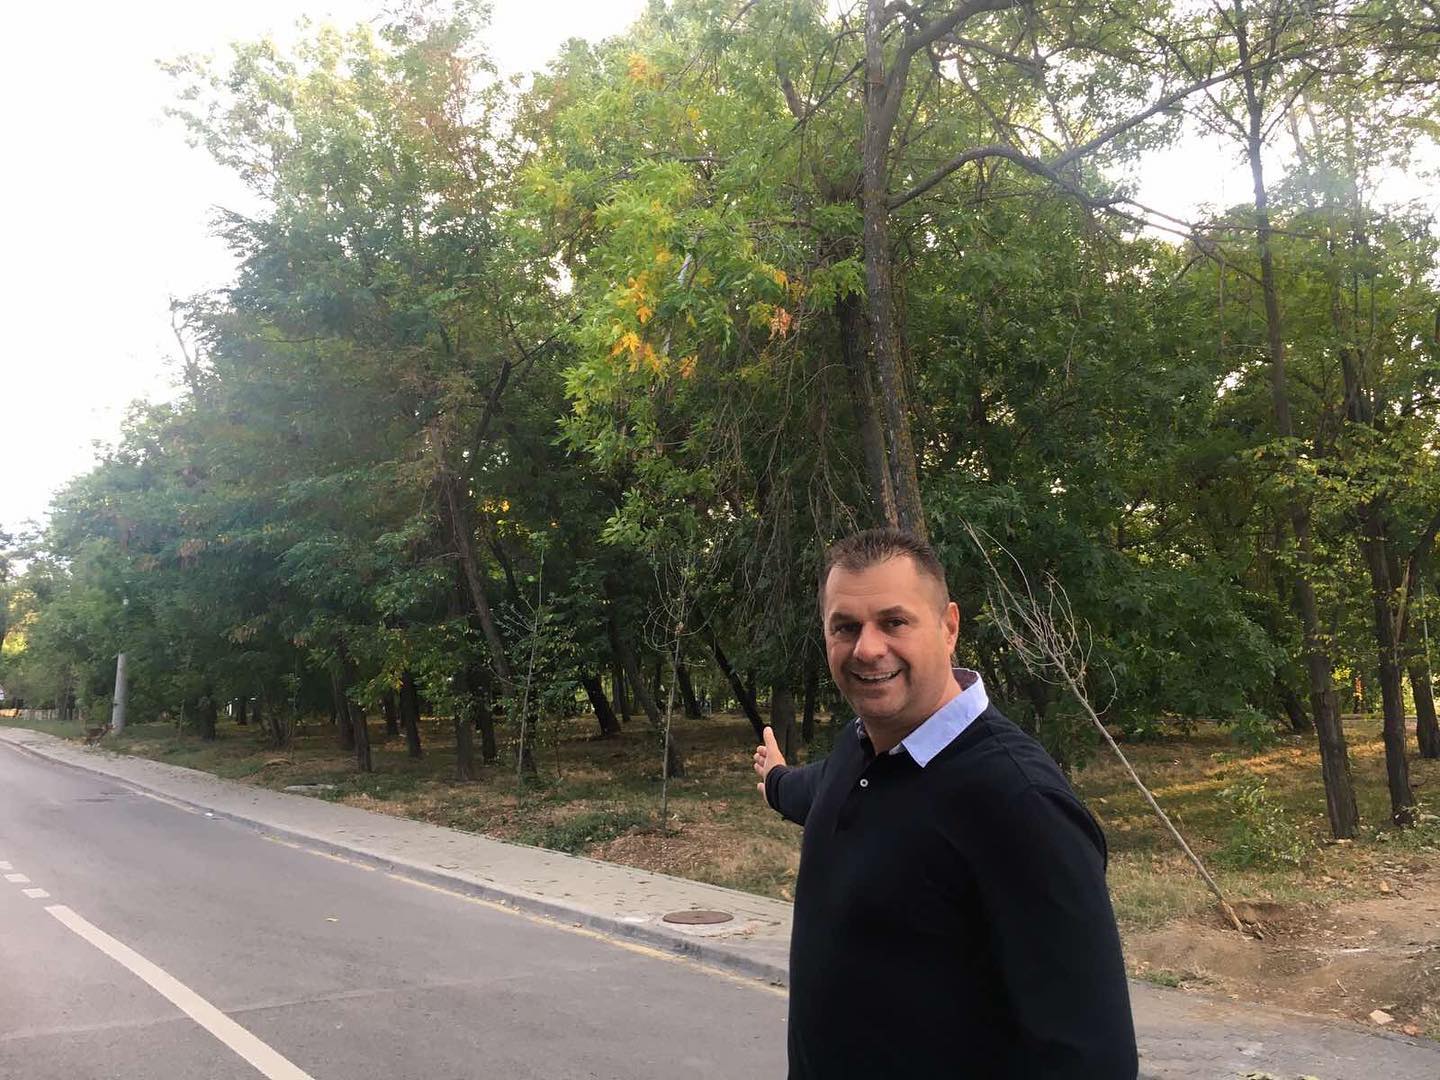 Hana: Në parkun e Arbërisë do të mbjellim pemë në nderim të sakrificës së të rënëve për liri